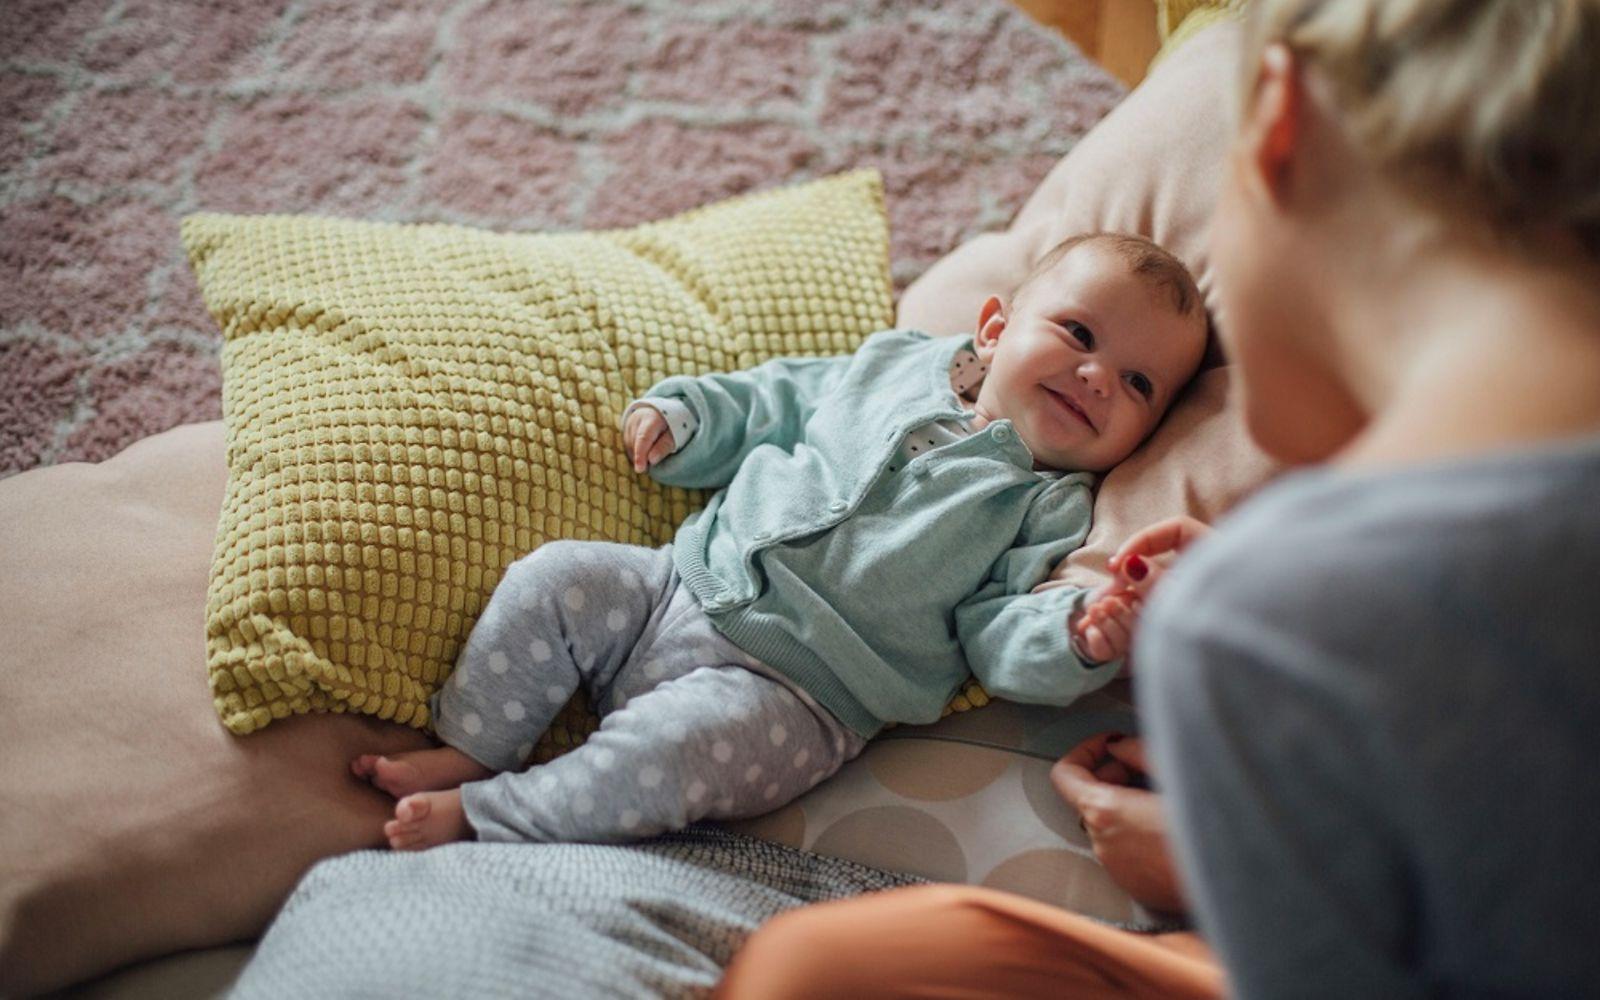 DAK Willkommen Baby: Lächelndes Baby liegt auf Kissen und schaut zu einer Frau hoch.